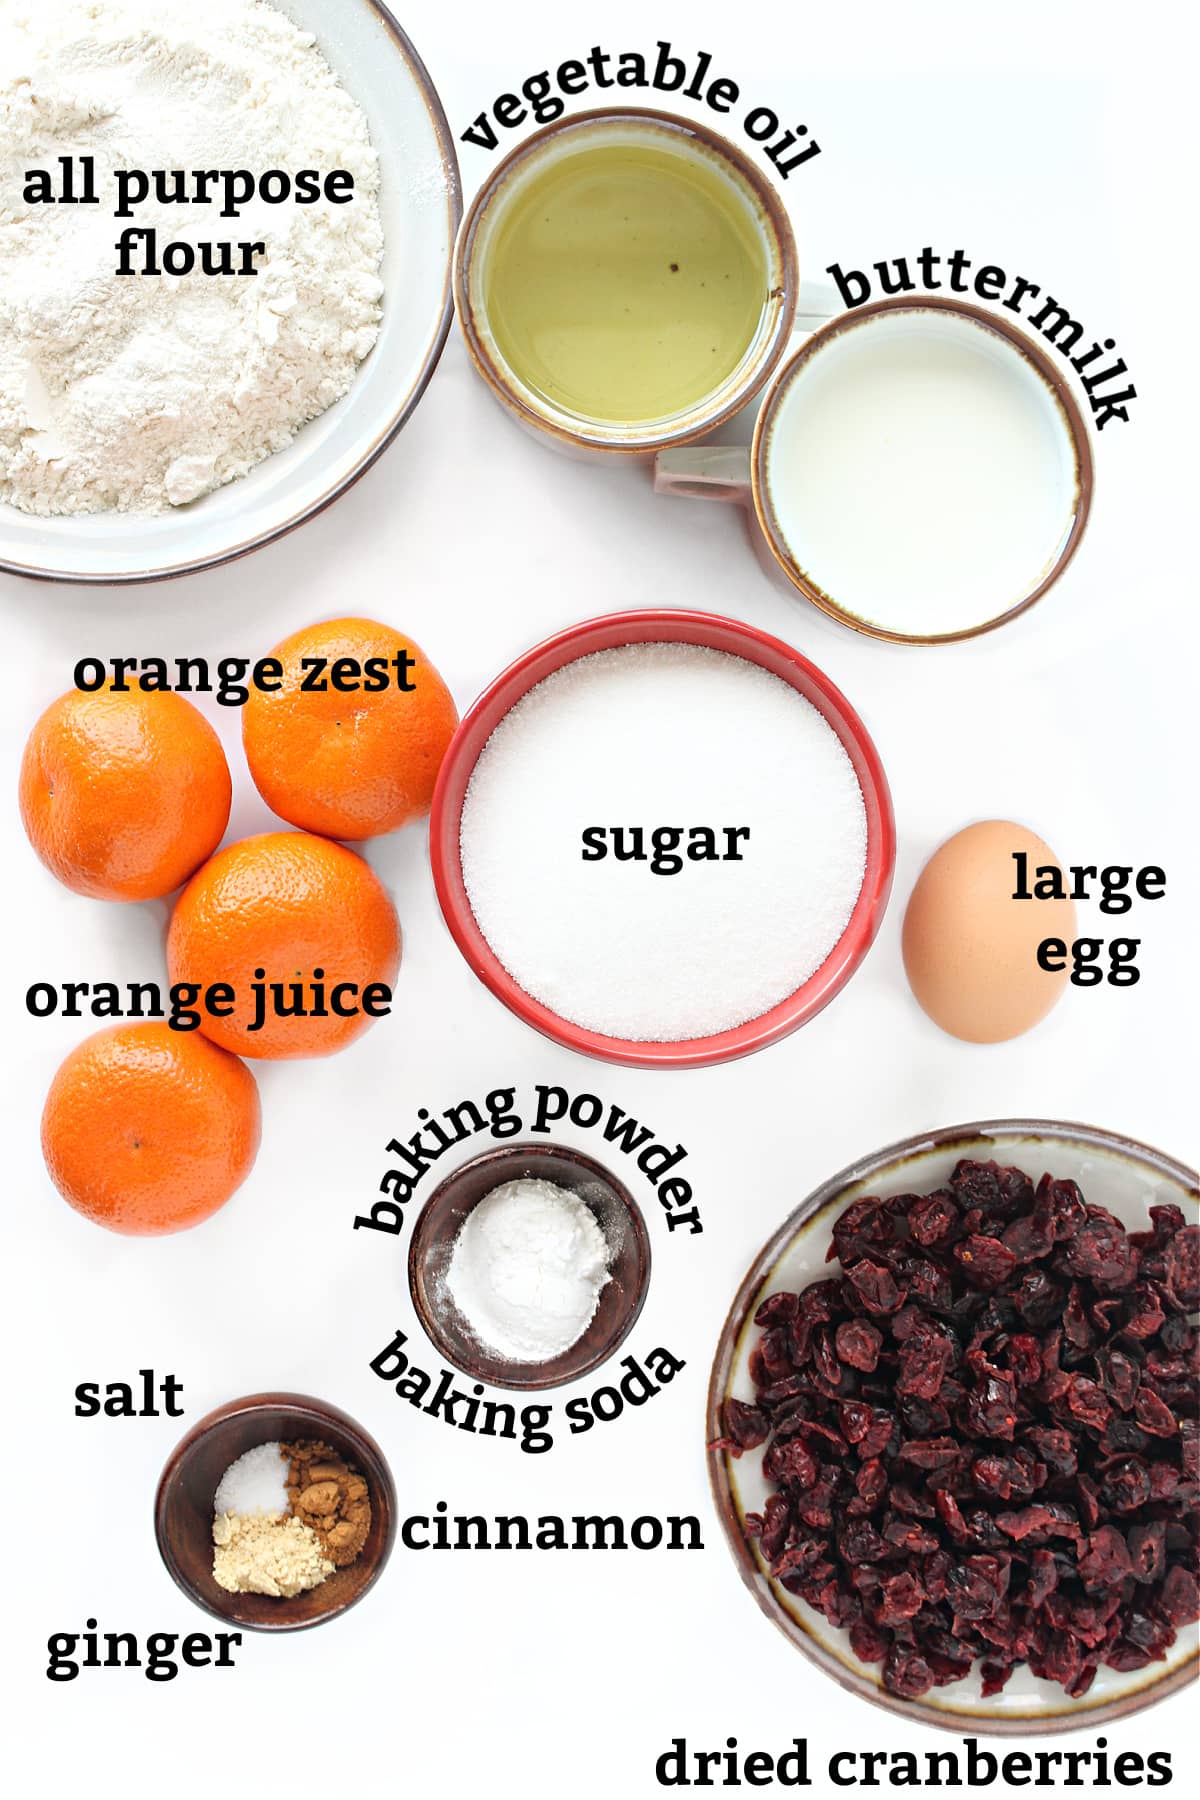 Ingredients: flour, oil, sugar, oranges, buttermilk, egg, craisins, cinnamon, ginger, baking powder, baking soda.